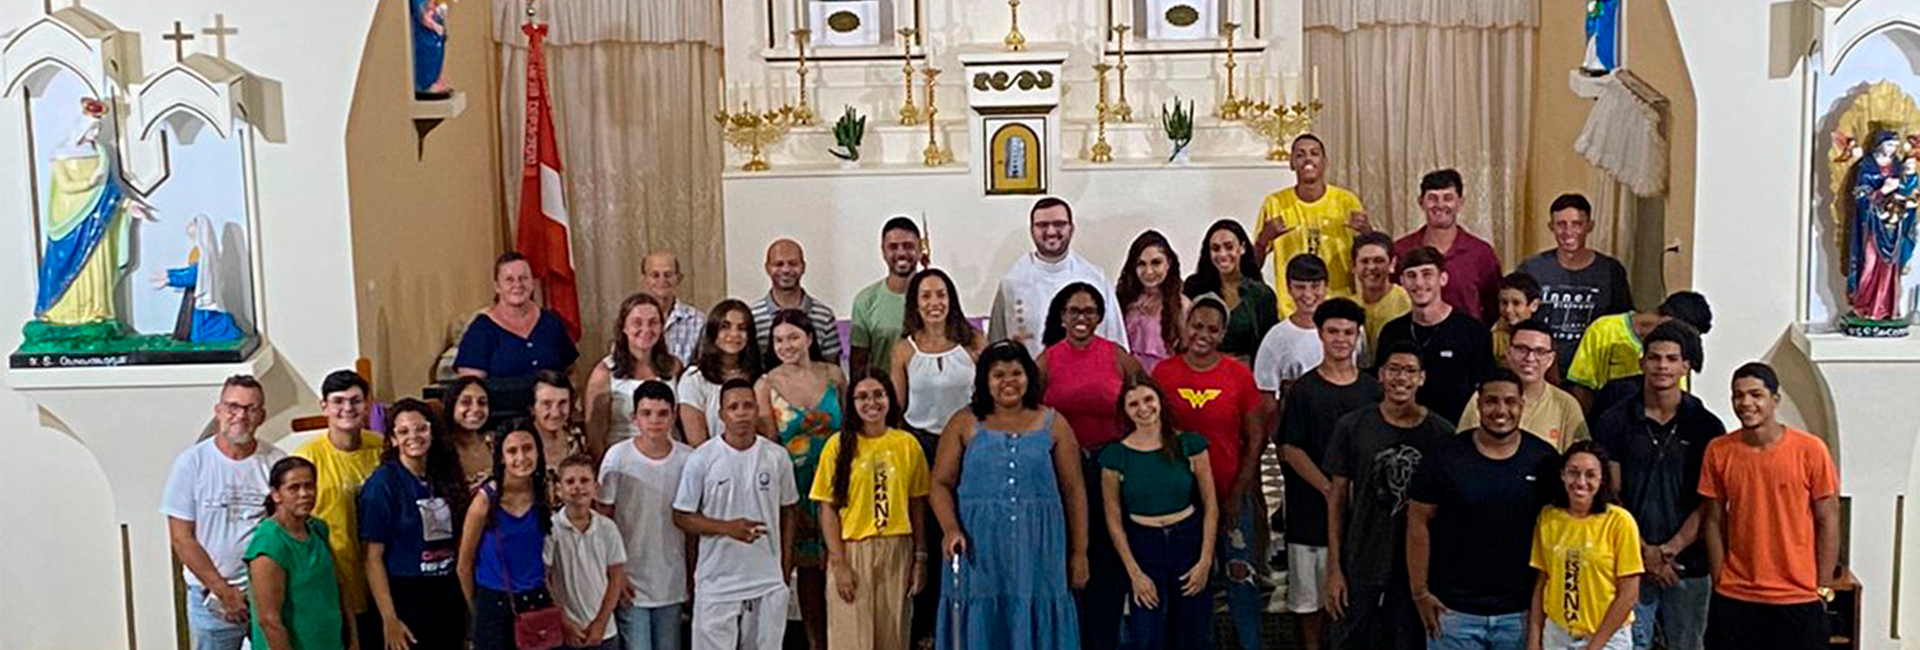 Juventudes de Colatina participam de “Luau Franciscano”